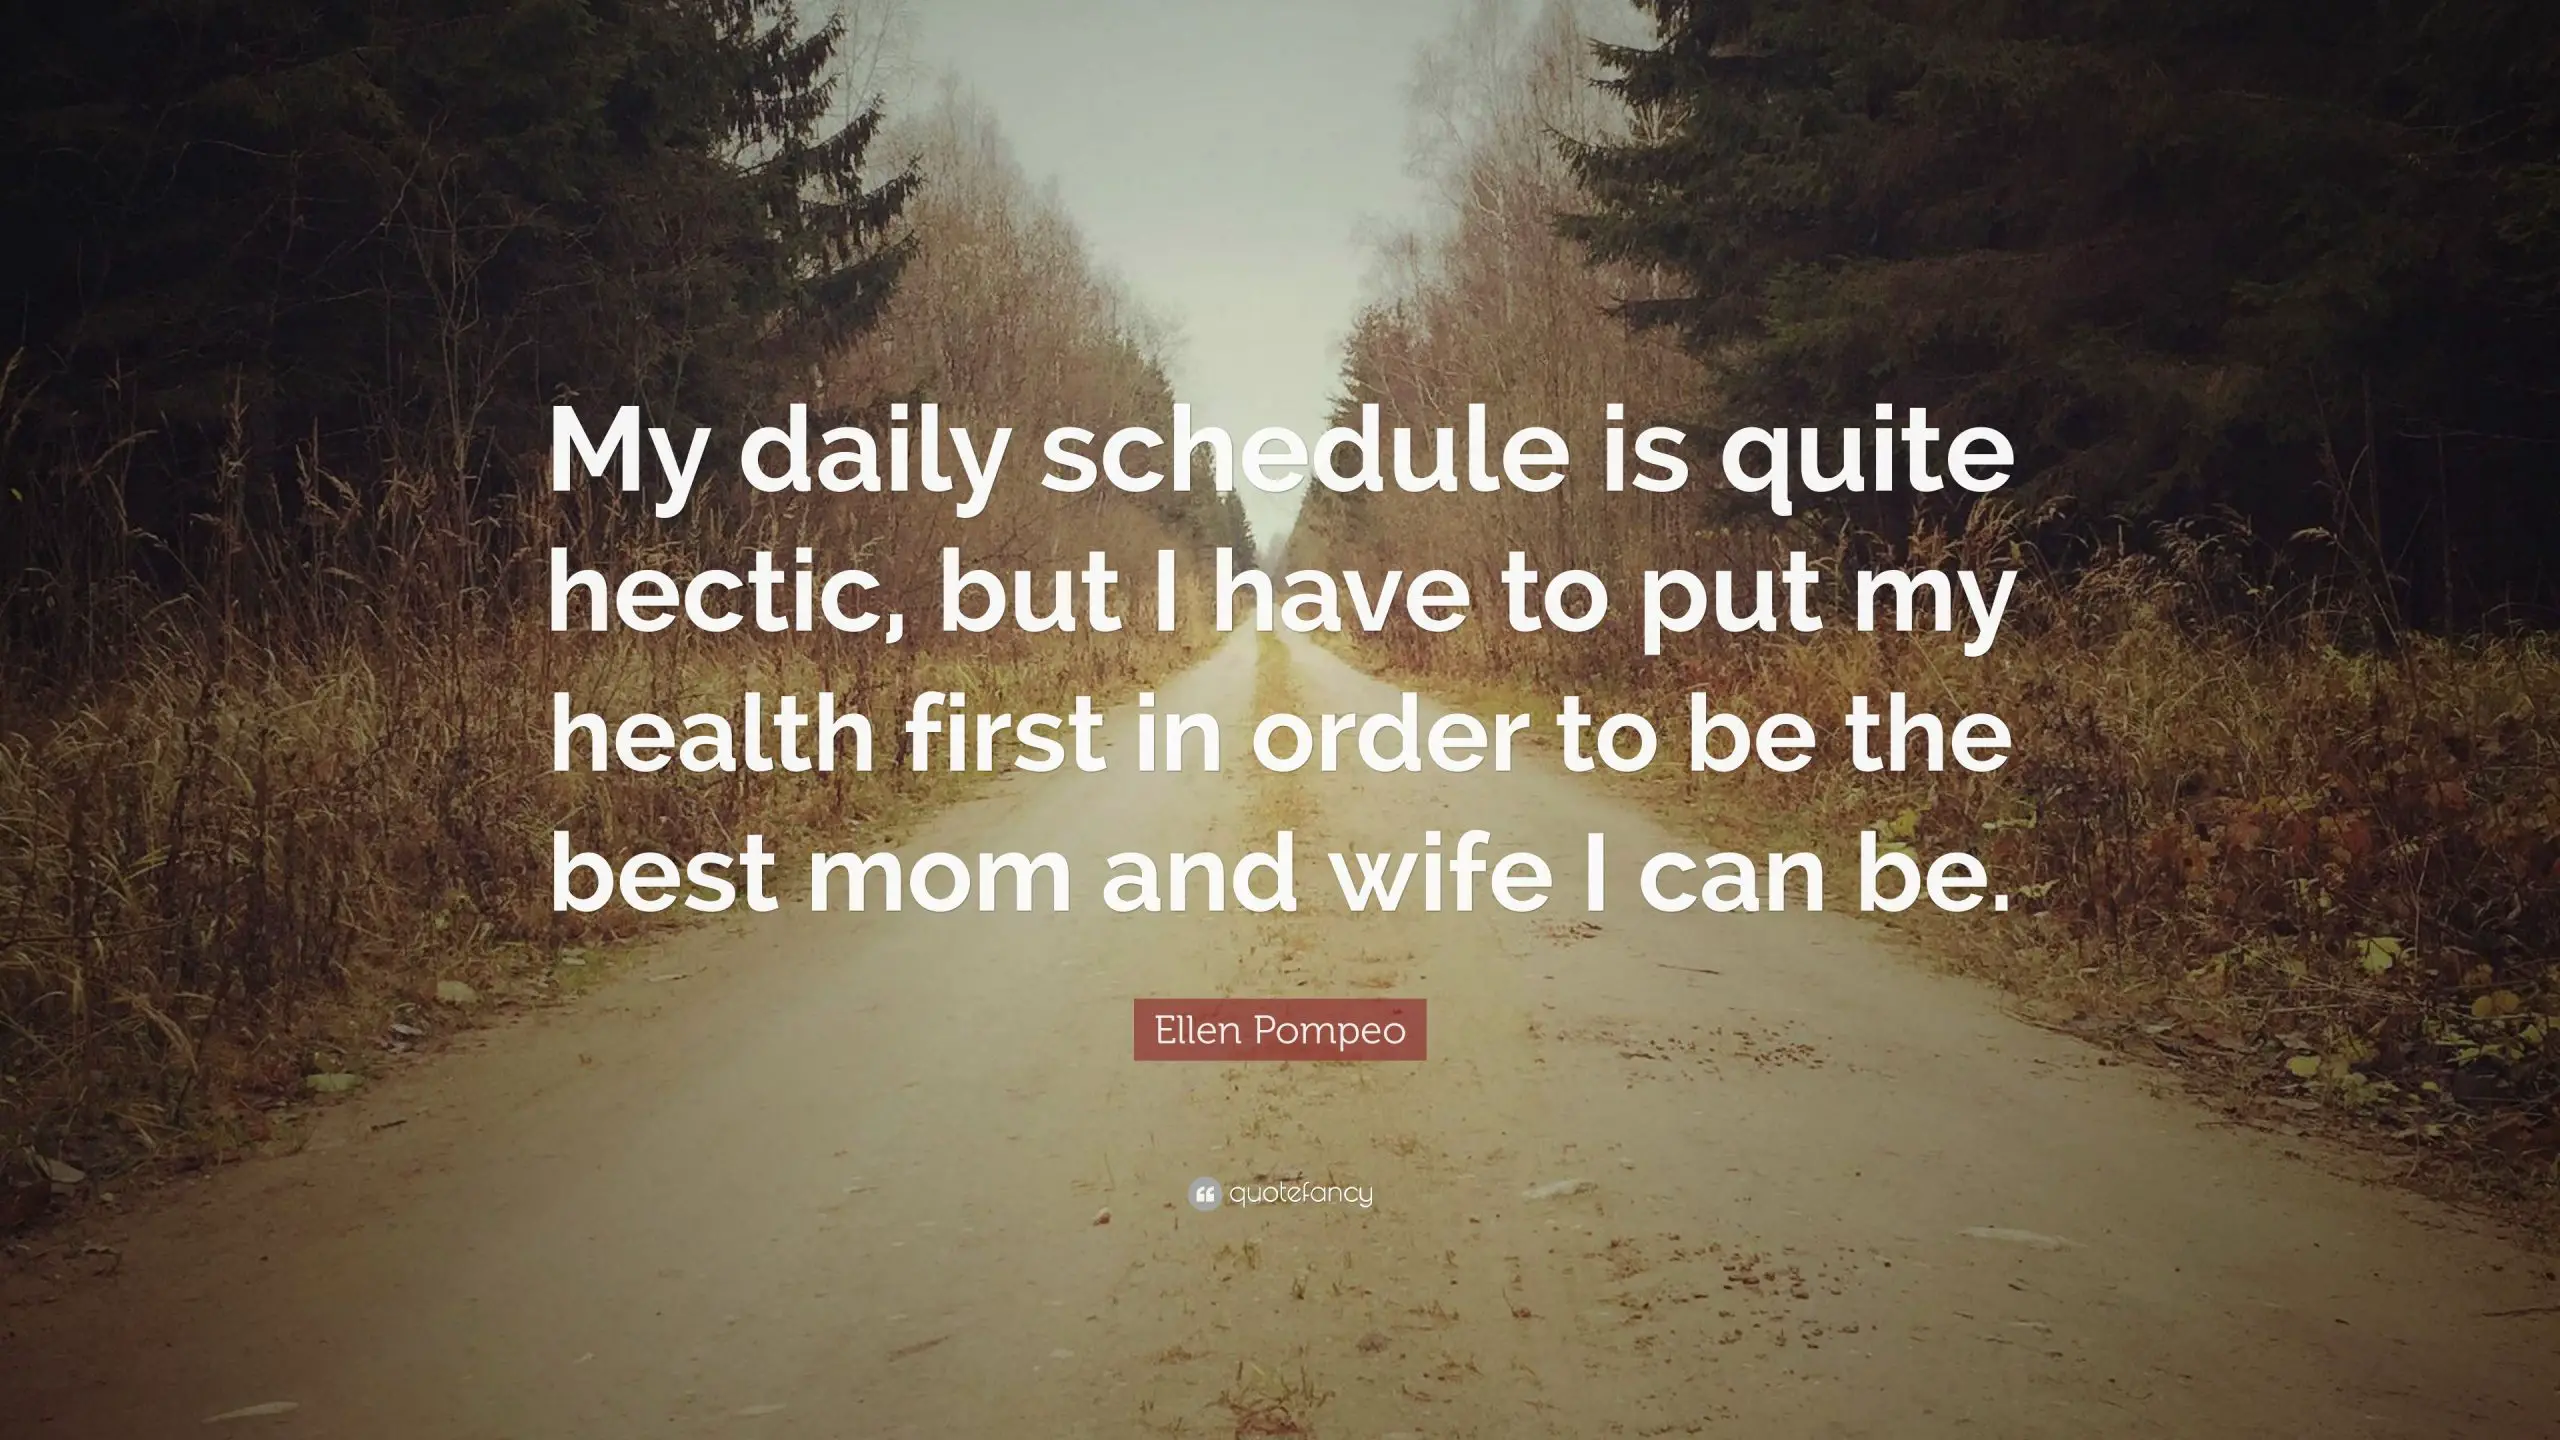 Ellen Pompeo Quote: My daily schedule is quite hectic ...